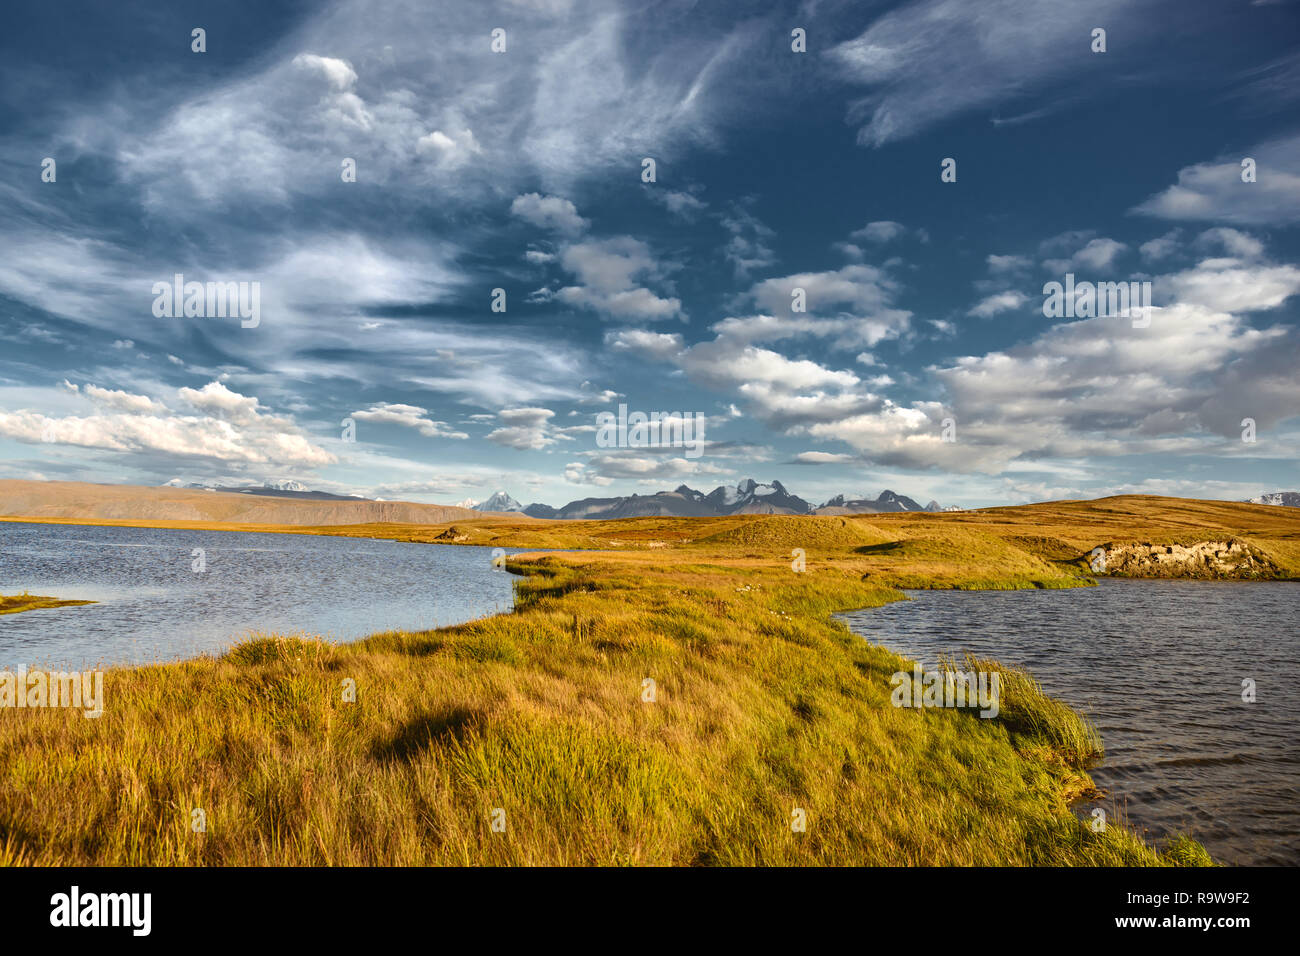 Paysage serein avec la surface de l'eau, montagnes de neige et herbe jaune. Montagnes de l'Altaï, en Sibérie, Russie Banque D'Images